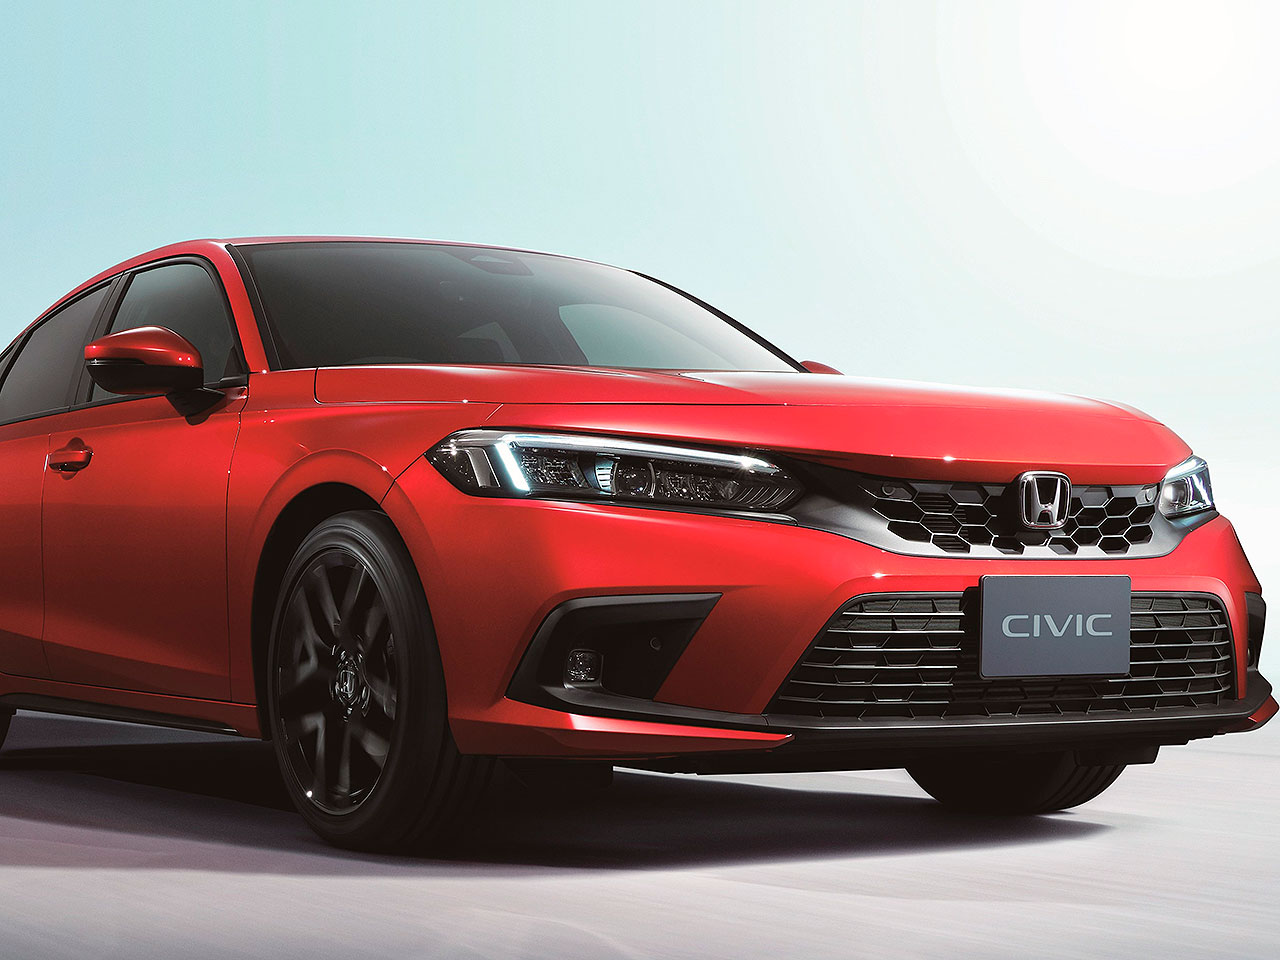 Detalhe do novo Civic e:HEV, configuração híbrida já apresentada na Europa